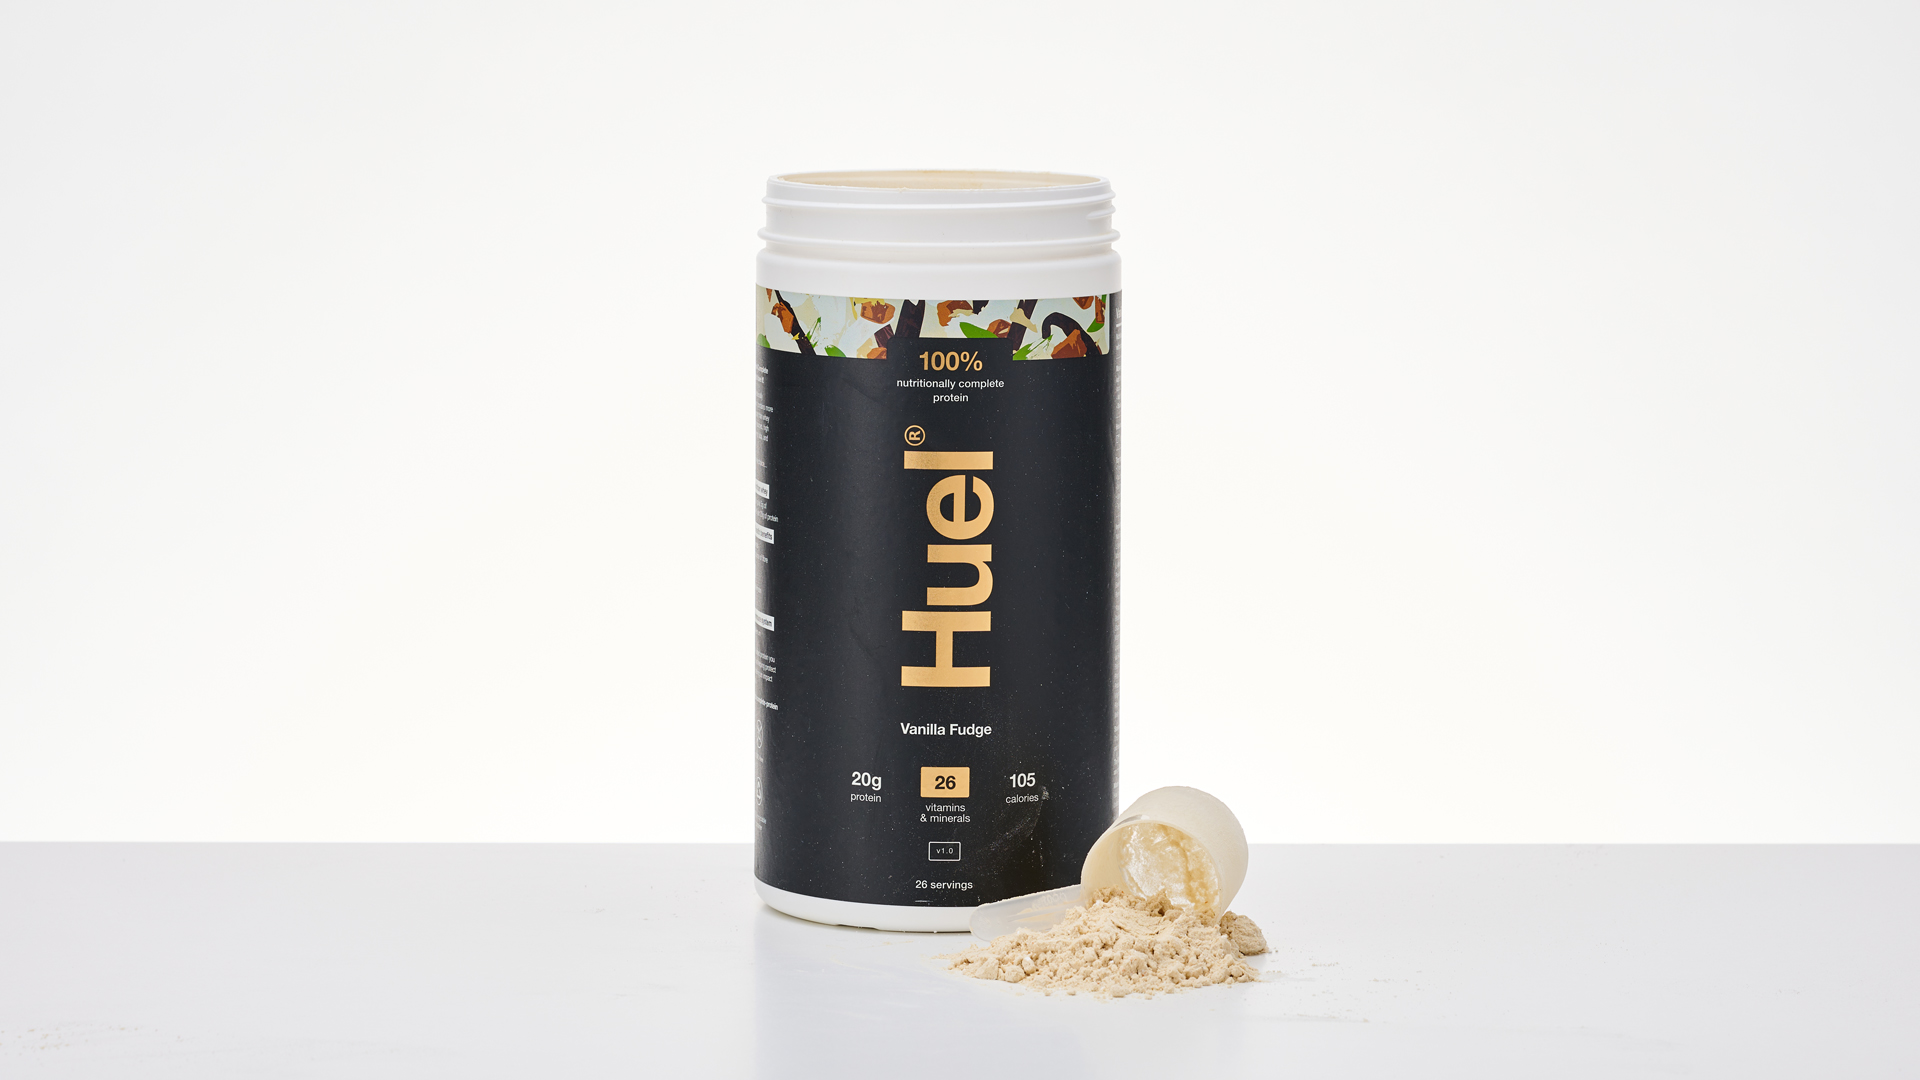 Huel protein powder